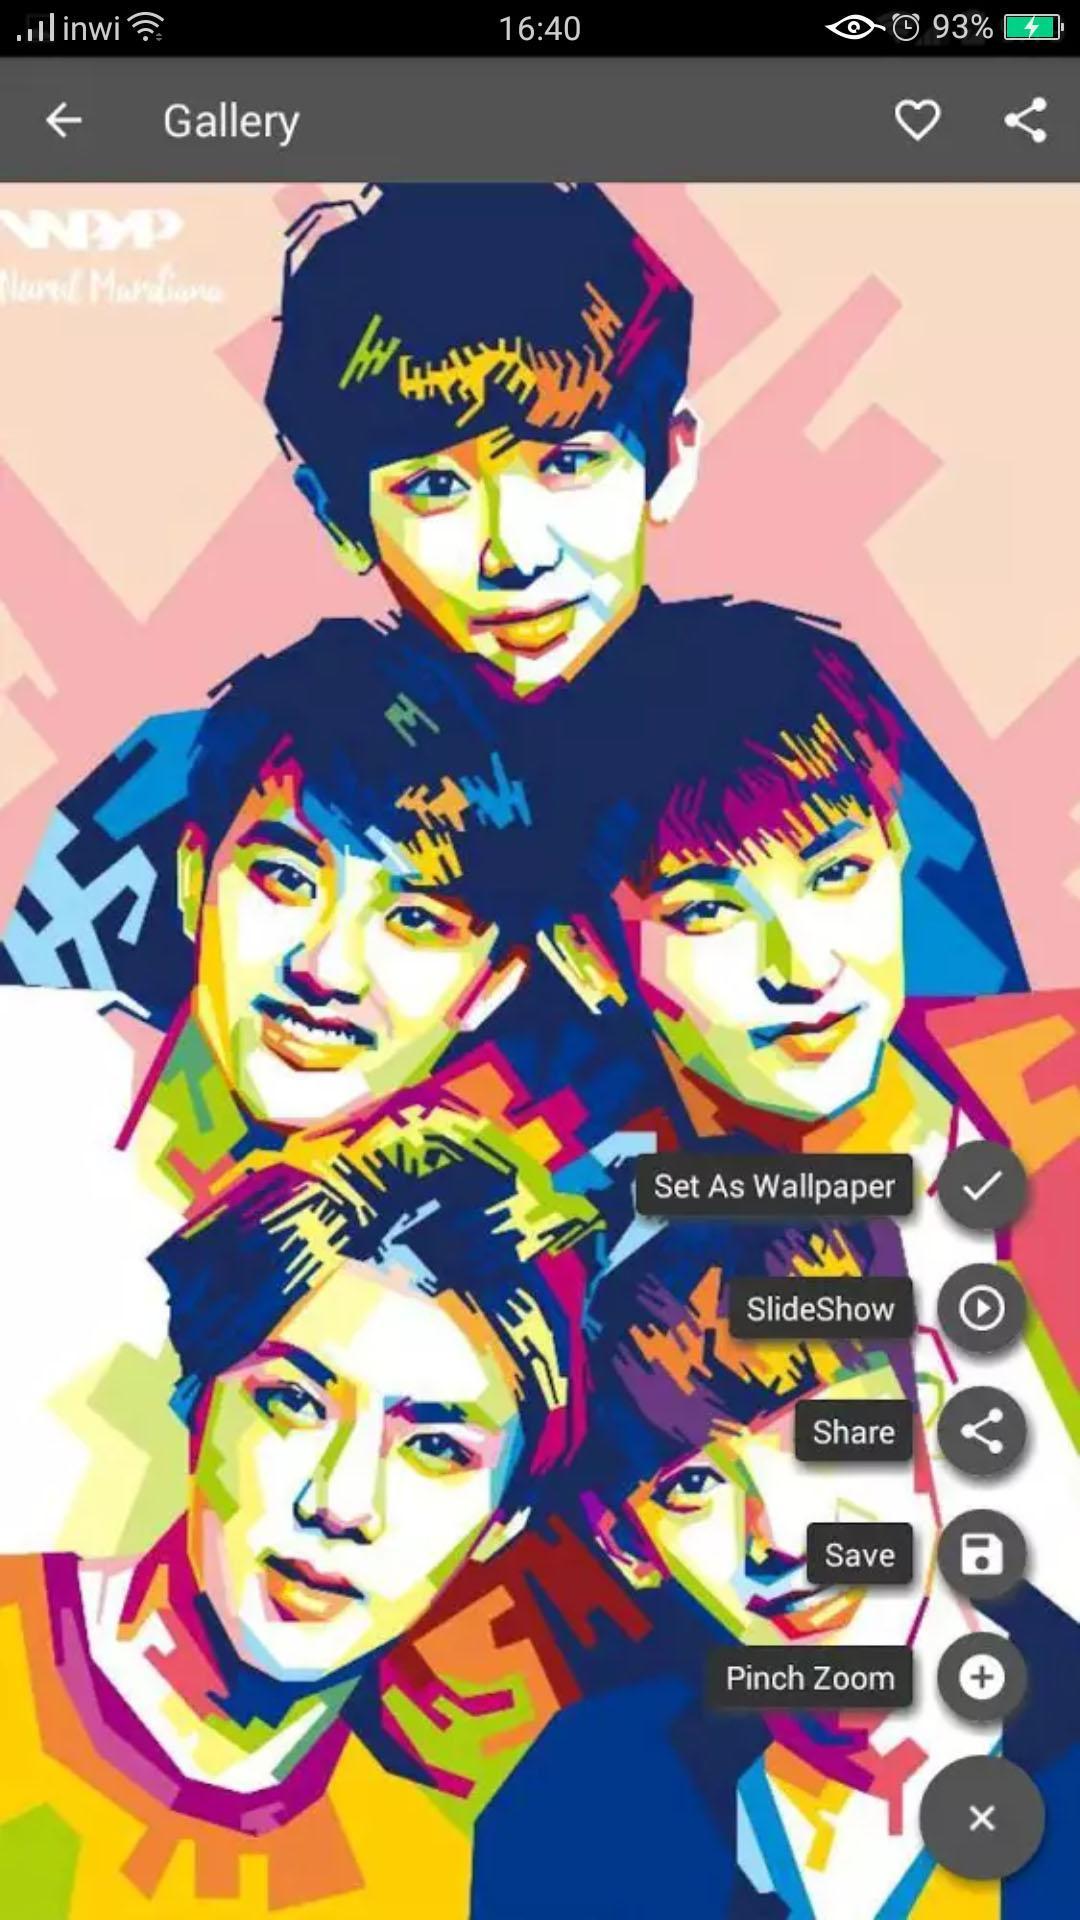 35 Gambar Exo Wallpaper Hd Android terbaru 2020